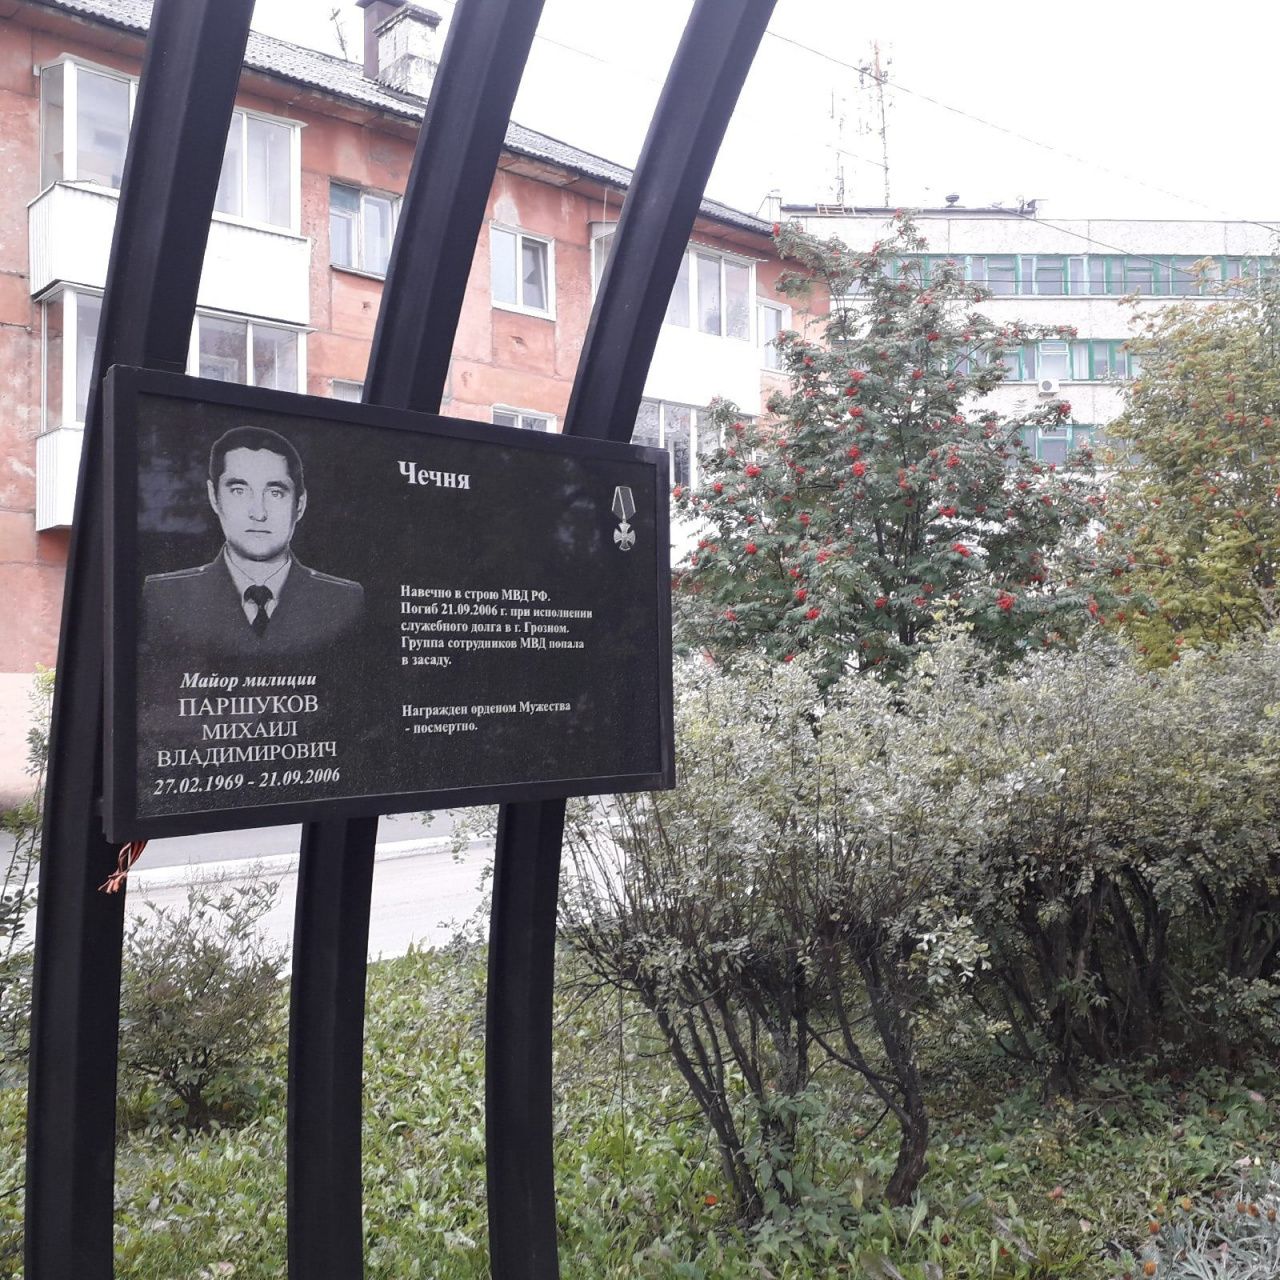 Сотрудники полиции почтили память коллеги Михаила Паршукова, погибшего при выполнении служебного долга